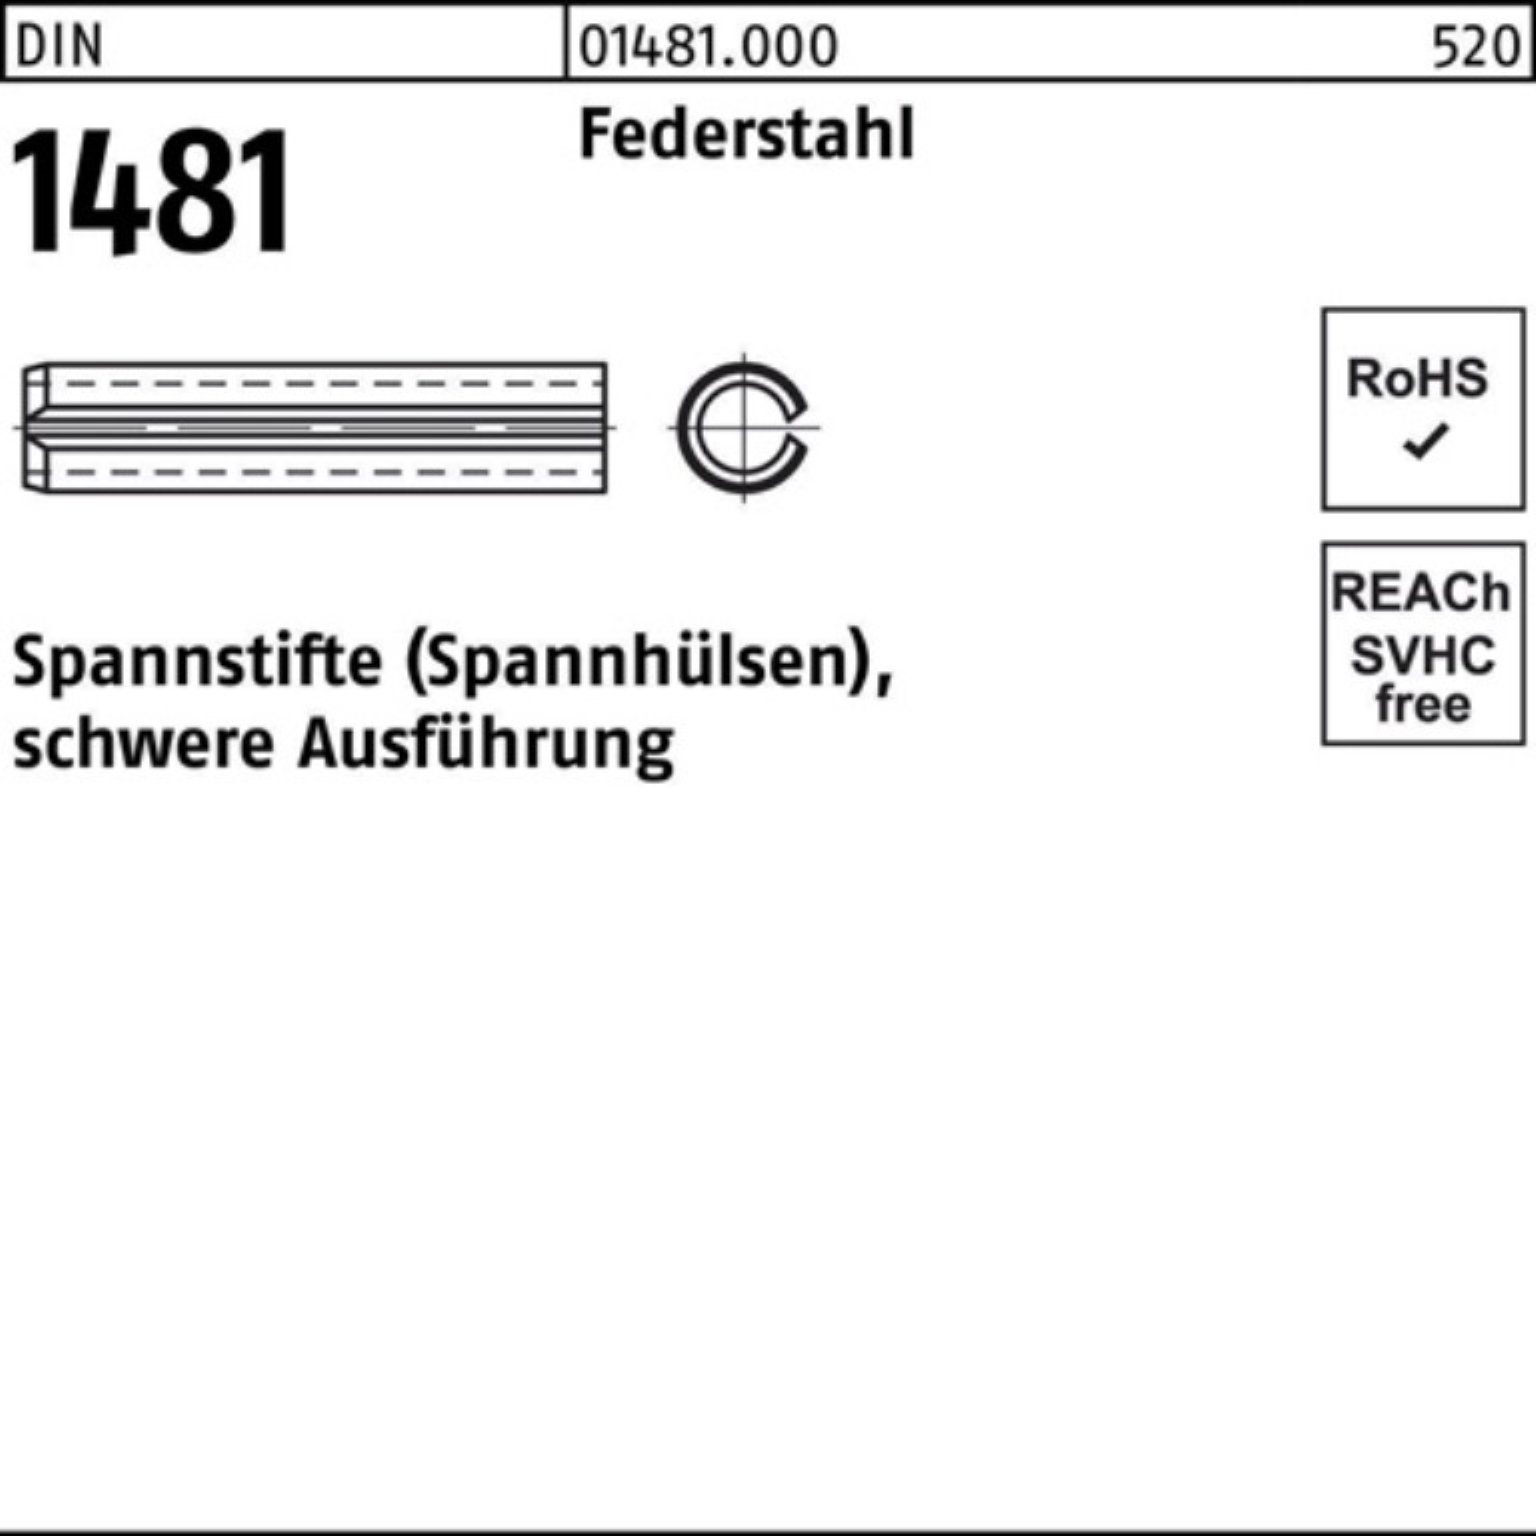 Reyher Spannstift 100er Pack Ausführung 21x Federstahl schwere 1481 1 80 DIN Spannstift